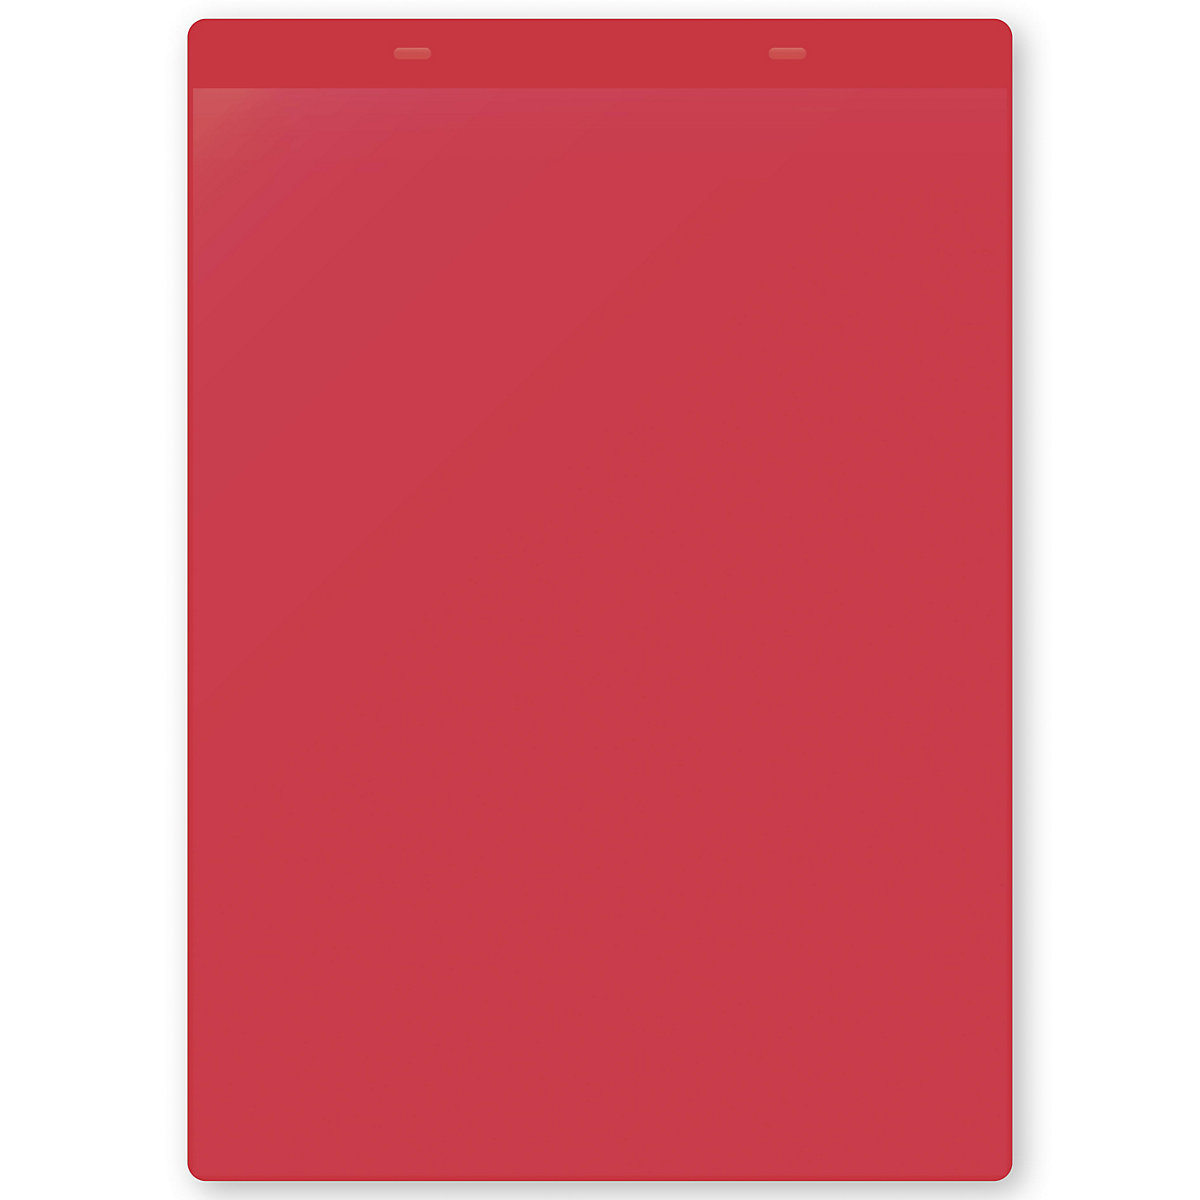 Dokumentumtartó tasakok akasztópánttal, DIN A4, álló, cs. e. 50 db, piros